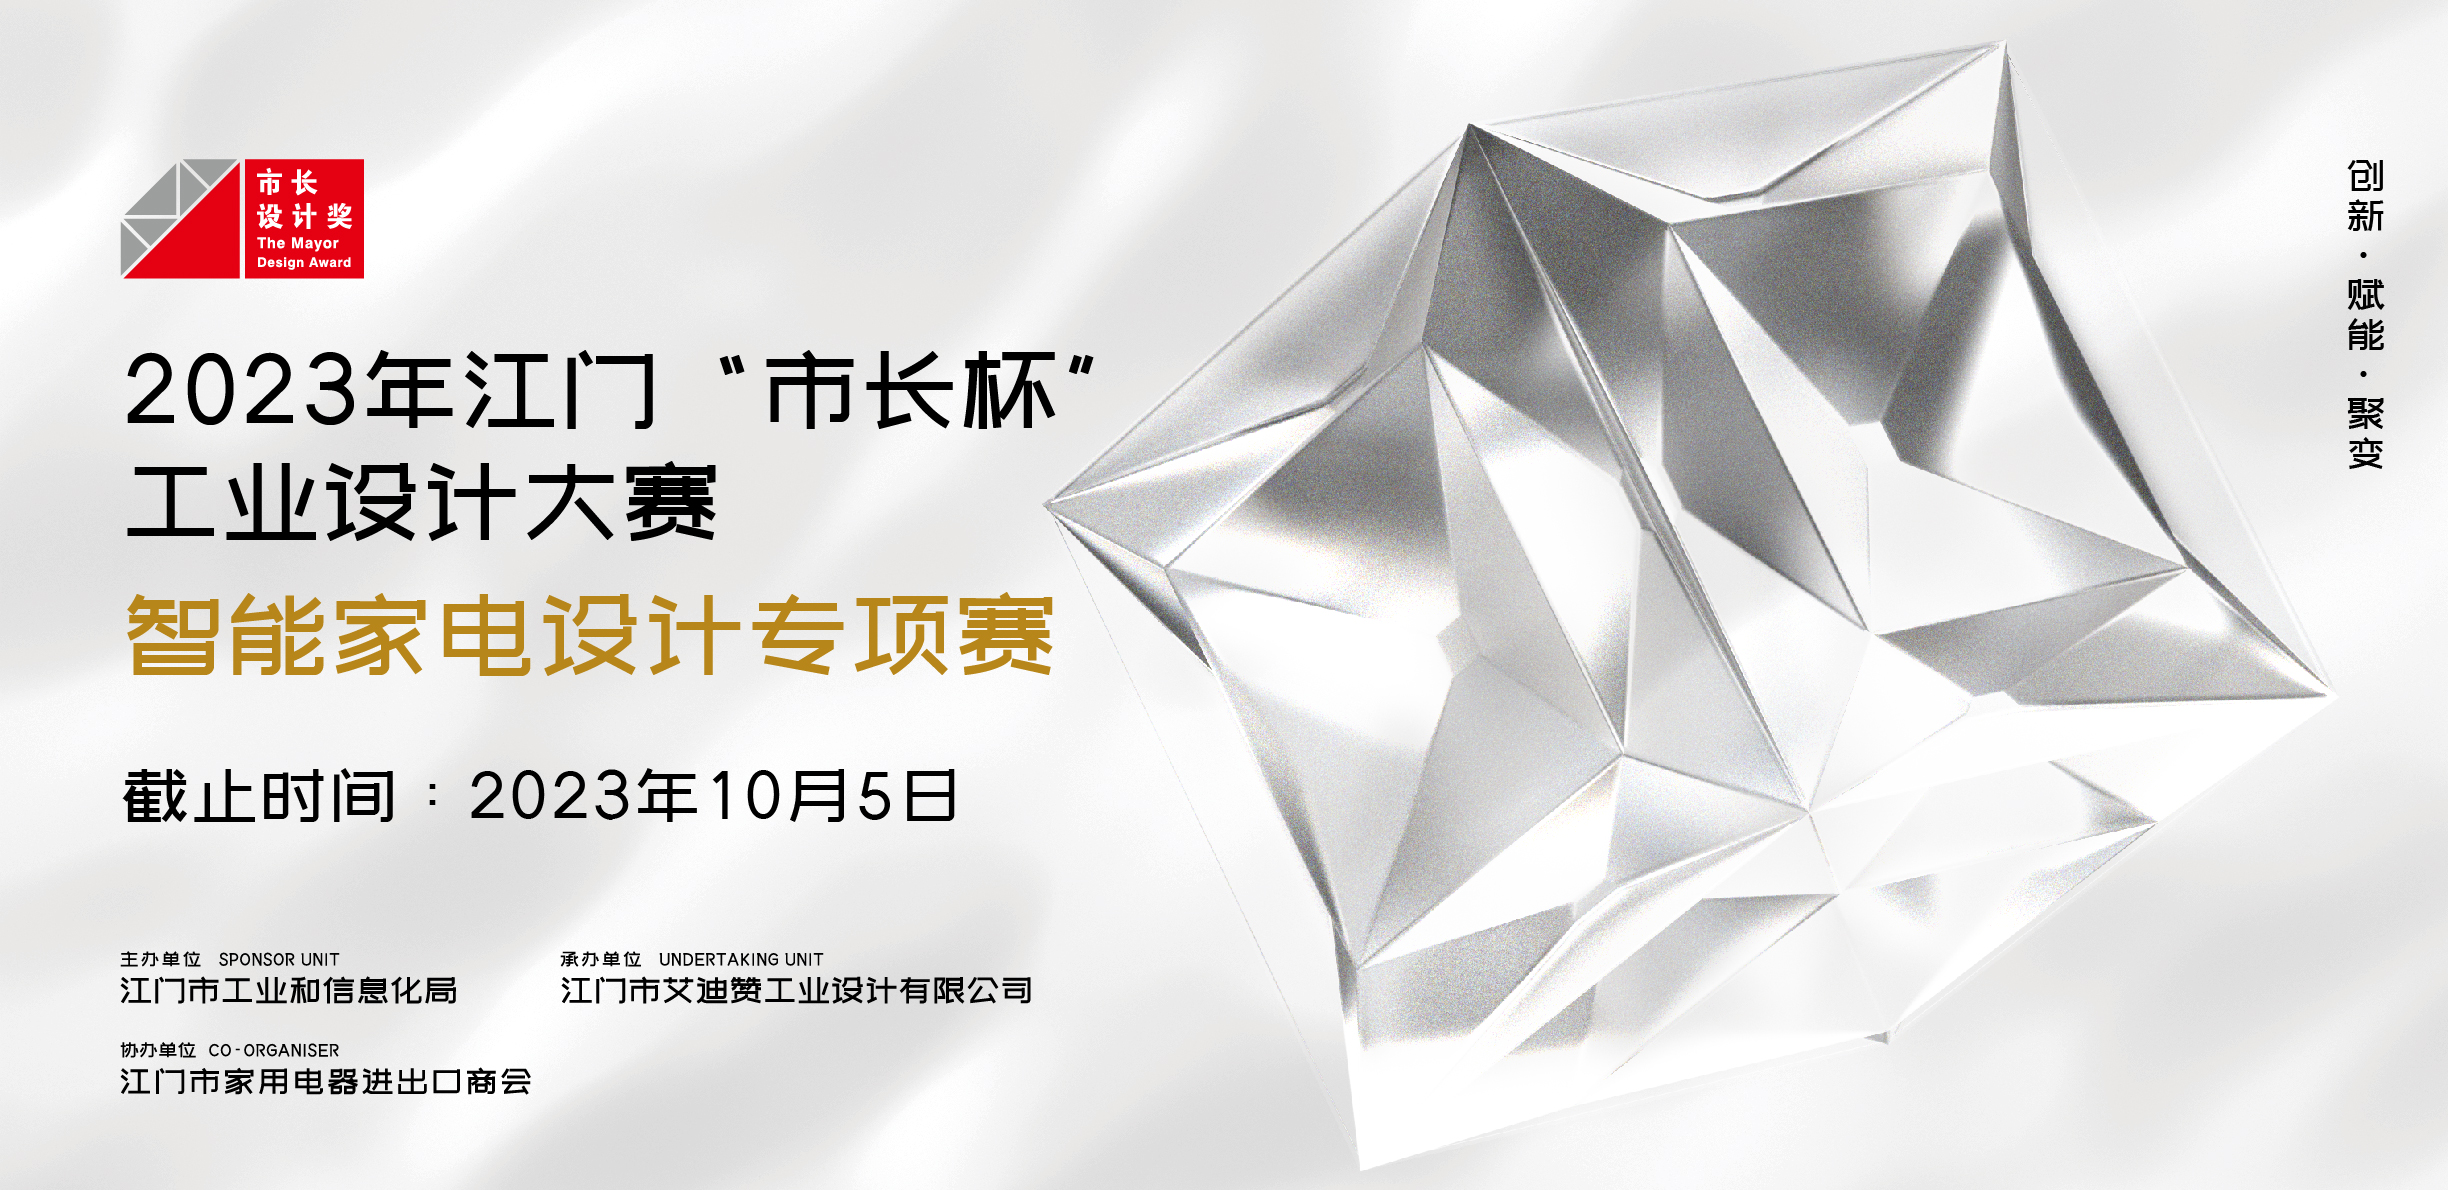 专项赛丨2023年江门“市长杯”工业设计大赛智能家电设计专项赛正式启动！